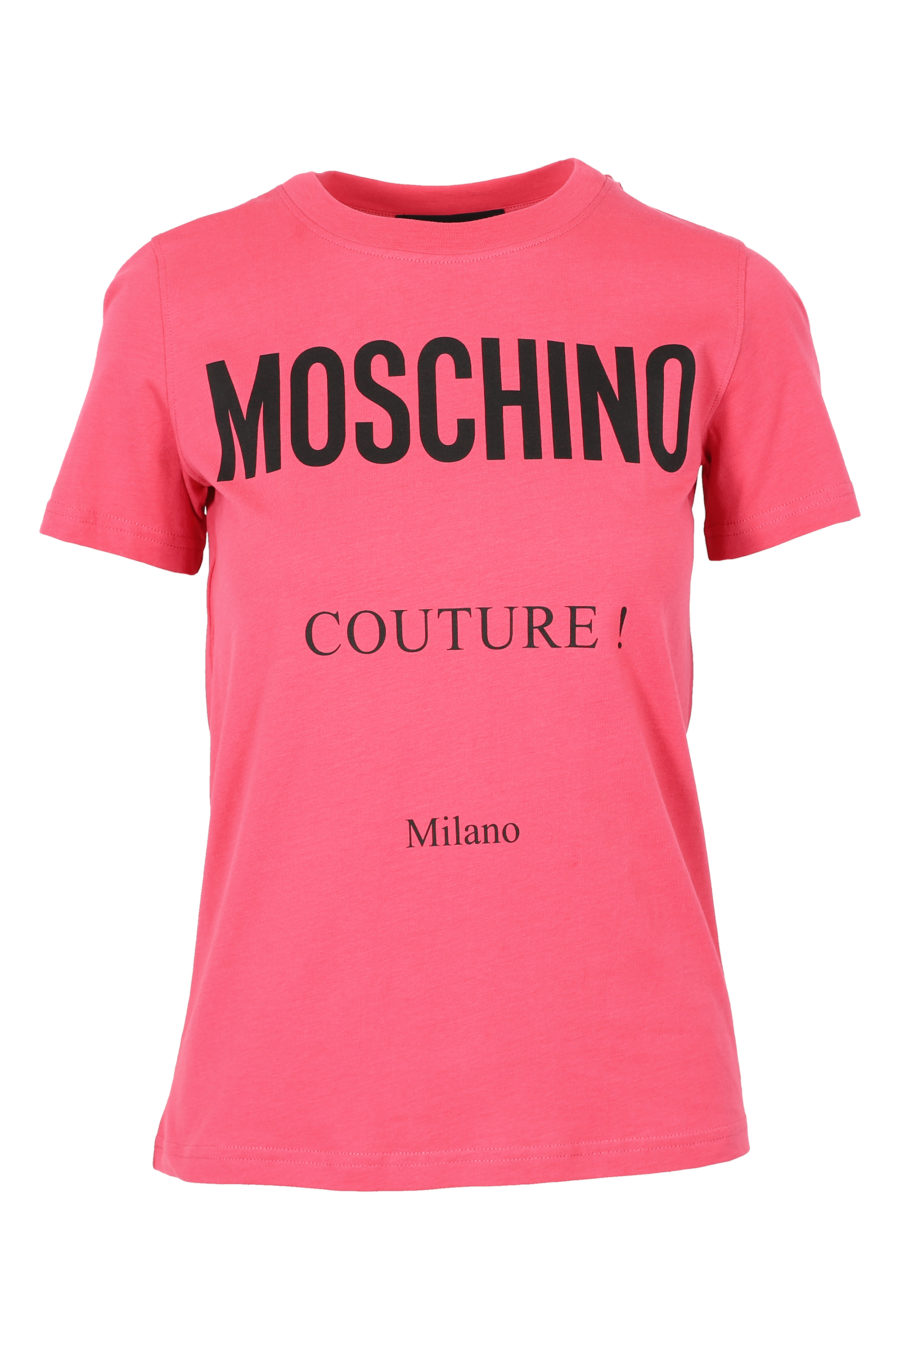 Camiseta rosa de manga corta "Couture" - IMG 3149